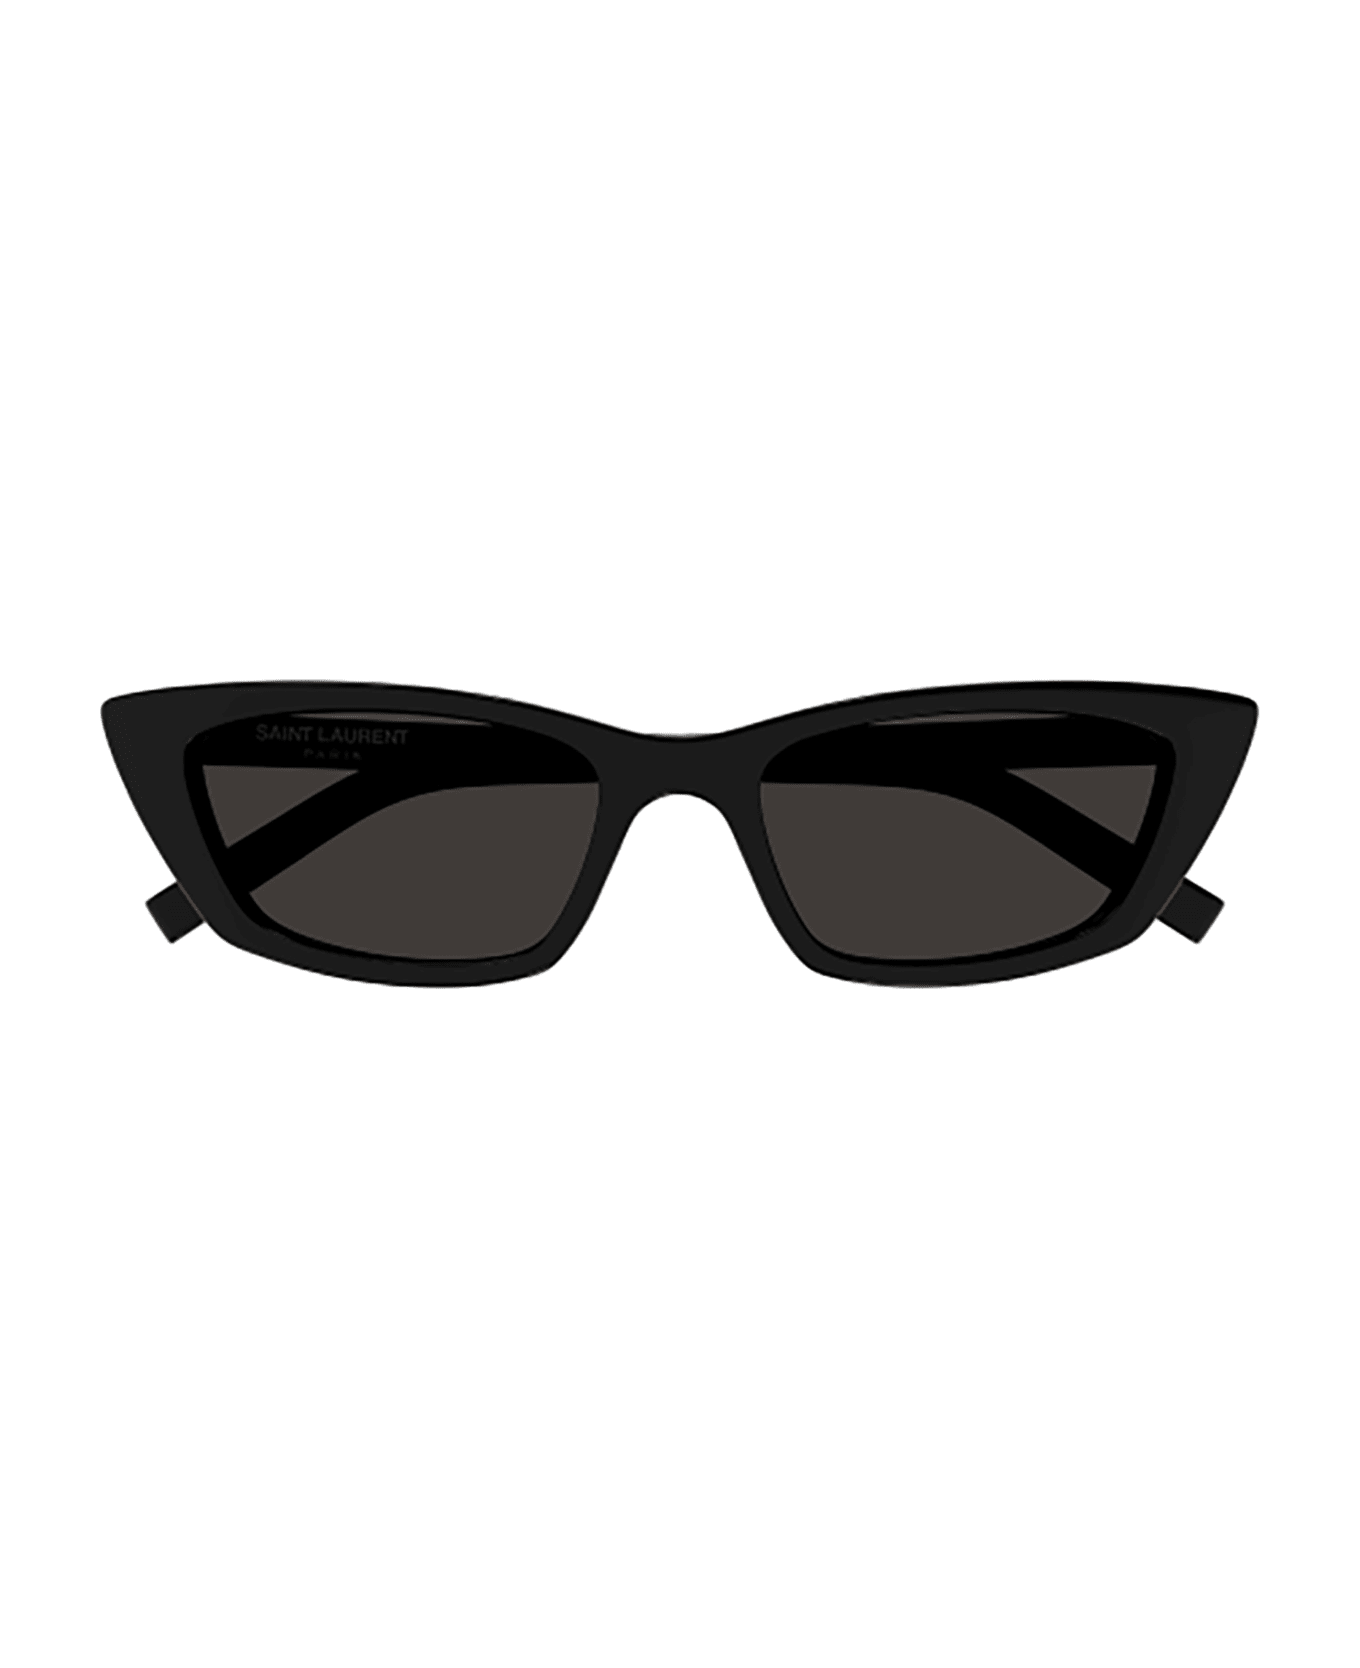 Saint Laurent Eyewear SL 277 Sunglasses - Black Black Black